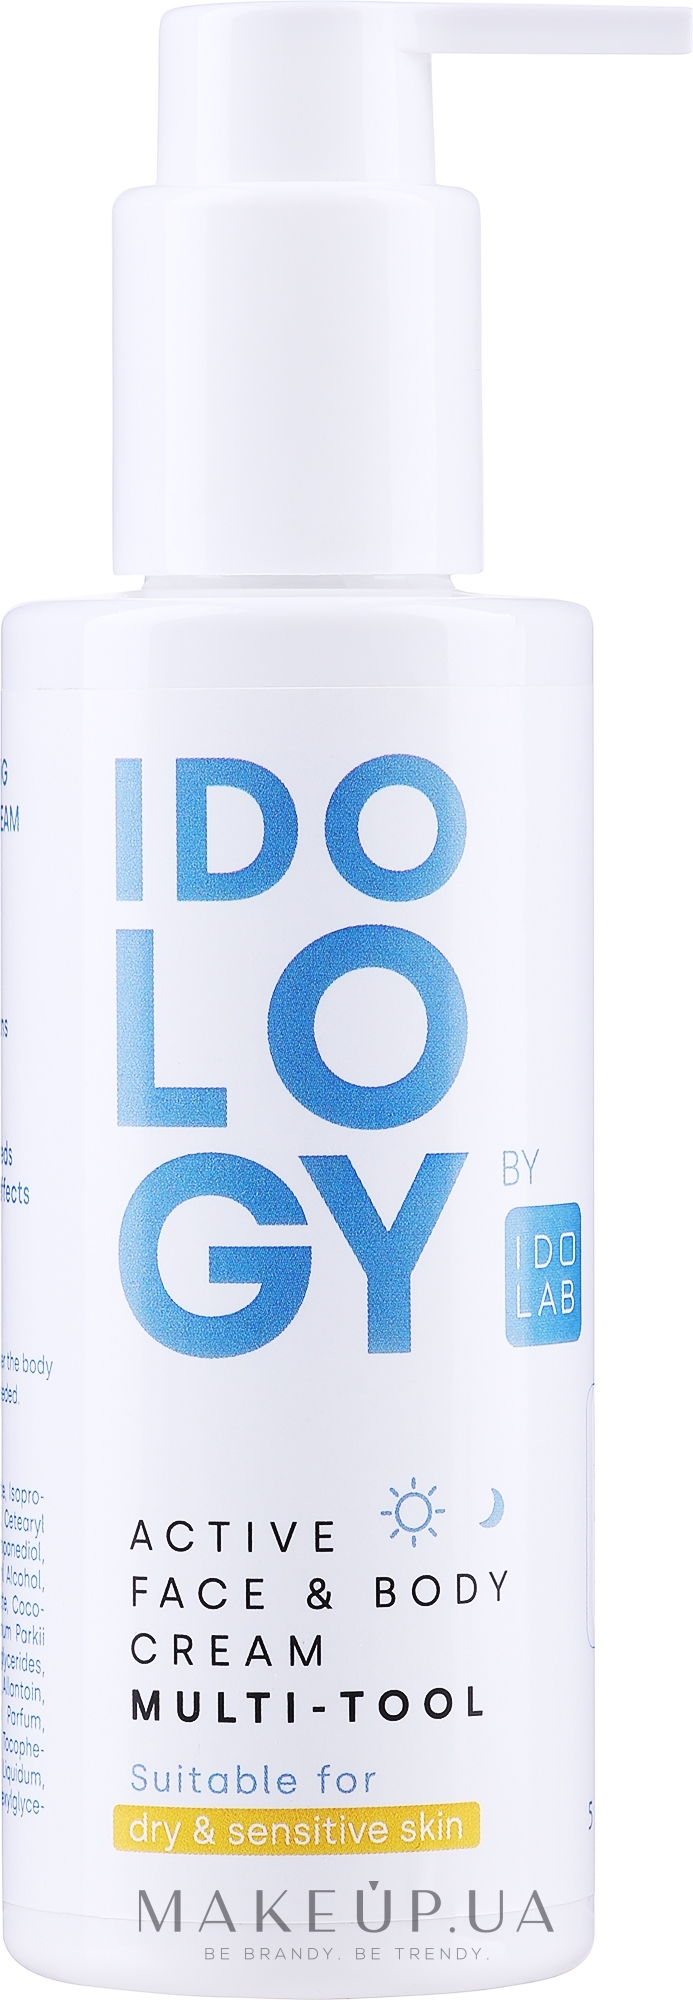 Багатофункціональний крем для обличчя та тіла для чоловіків - Idolab Idology Active Face & Body Cream Multi-tool — фото 150ml